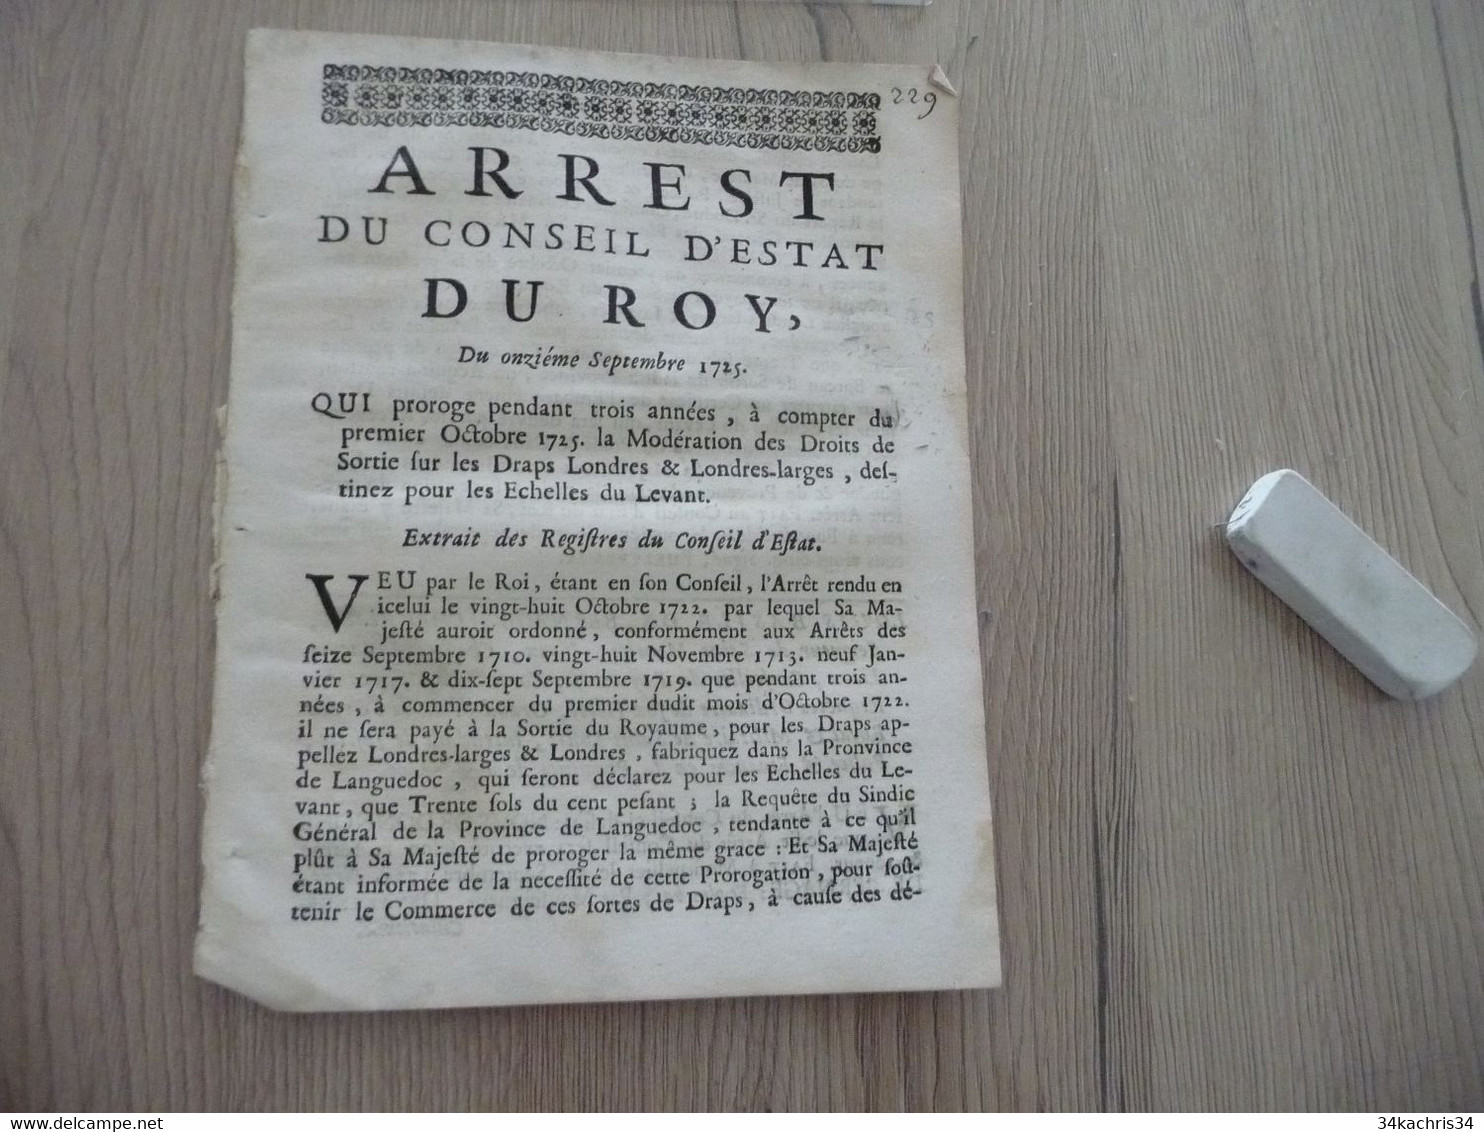 Arrest Du Conseil D''Etat Du Roi 11/09/1725 Prorogation Droits De Sortie De Draps De Londres ... Pour Les échelles Levan - Décrets & Lois